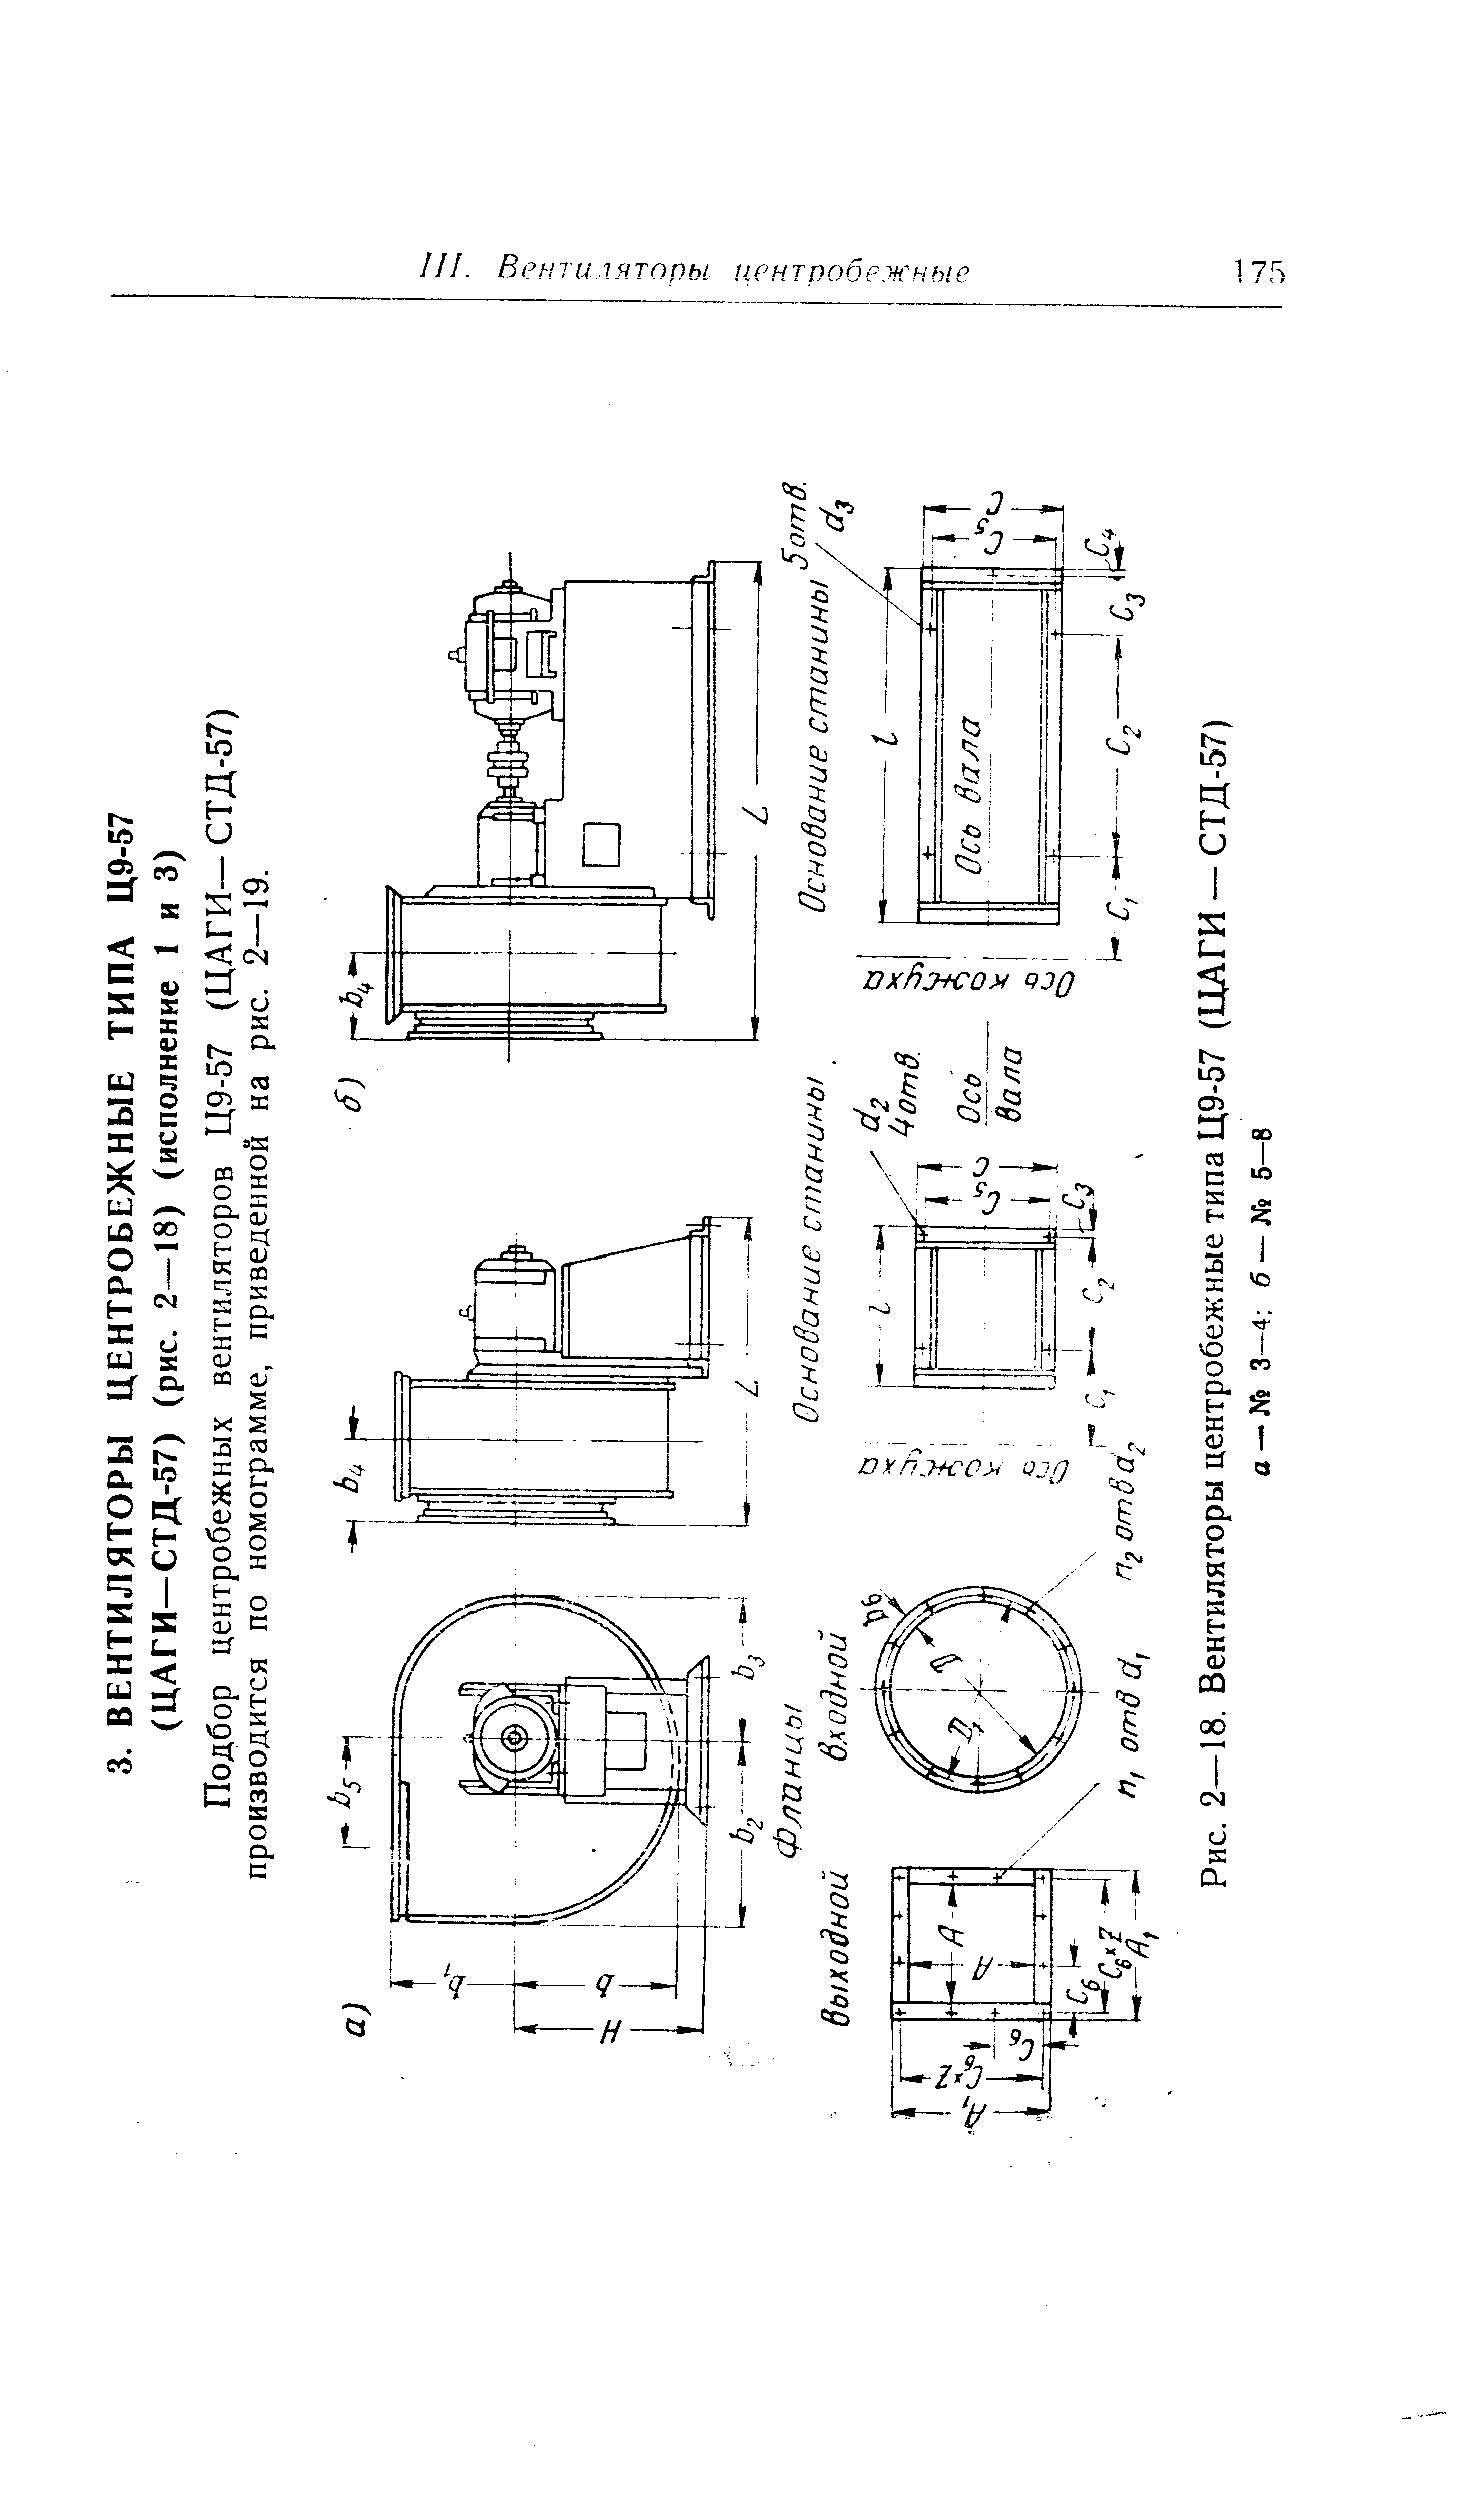 Подбор центробежных вентиляторов Ц9-57 (ЦАГИ— СТД-57) производится по номограмме, приведенной на рис. 2—19.